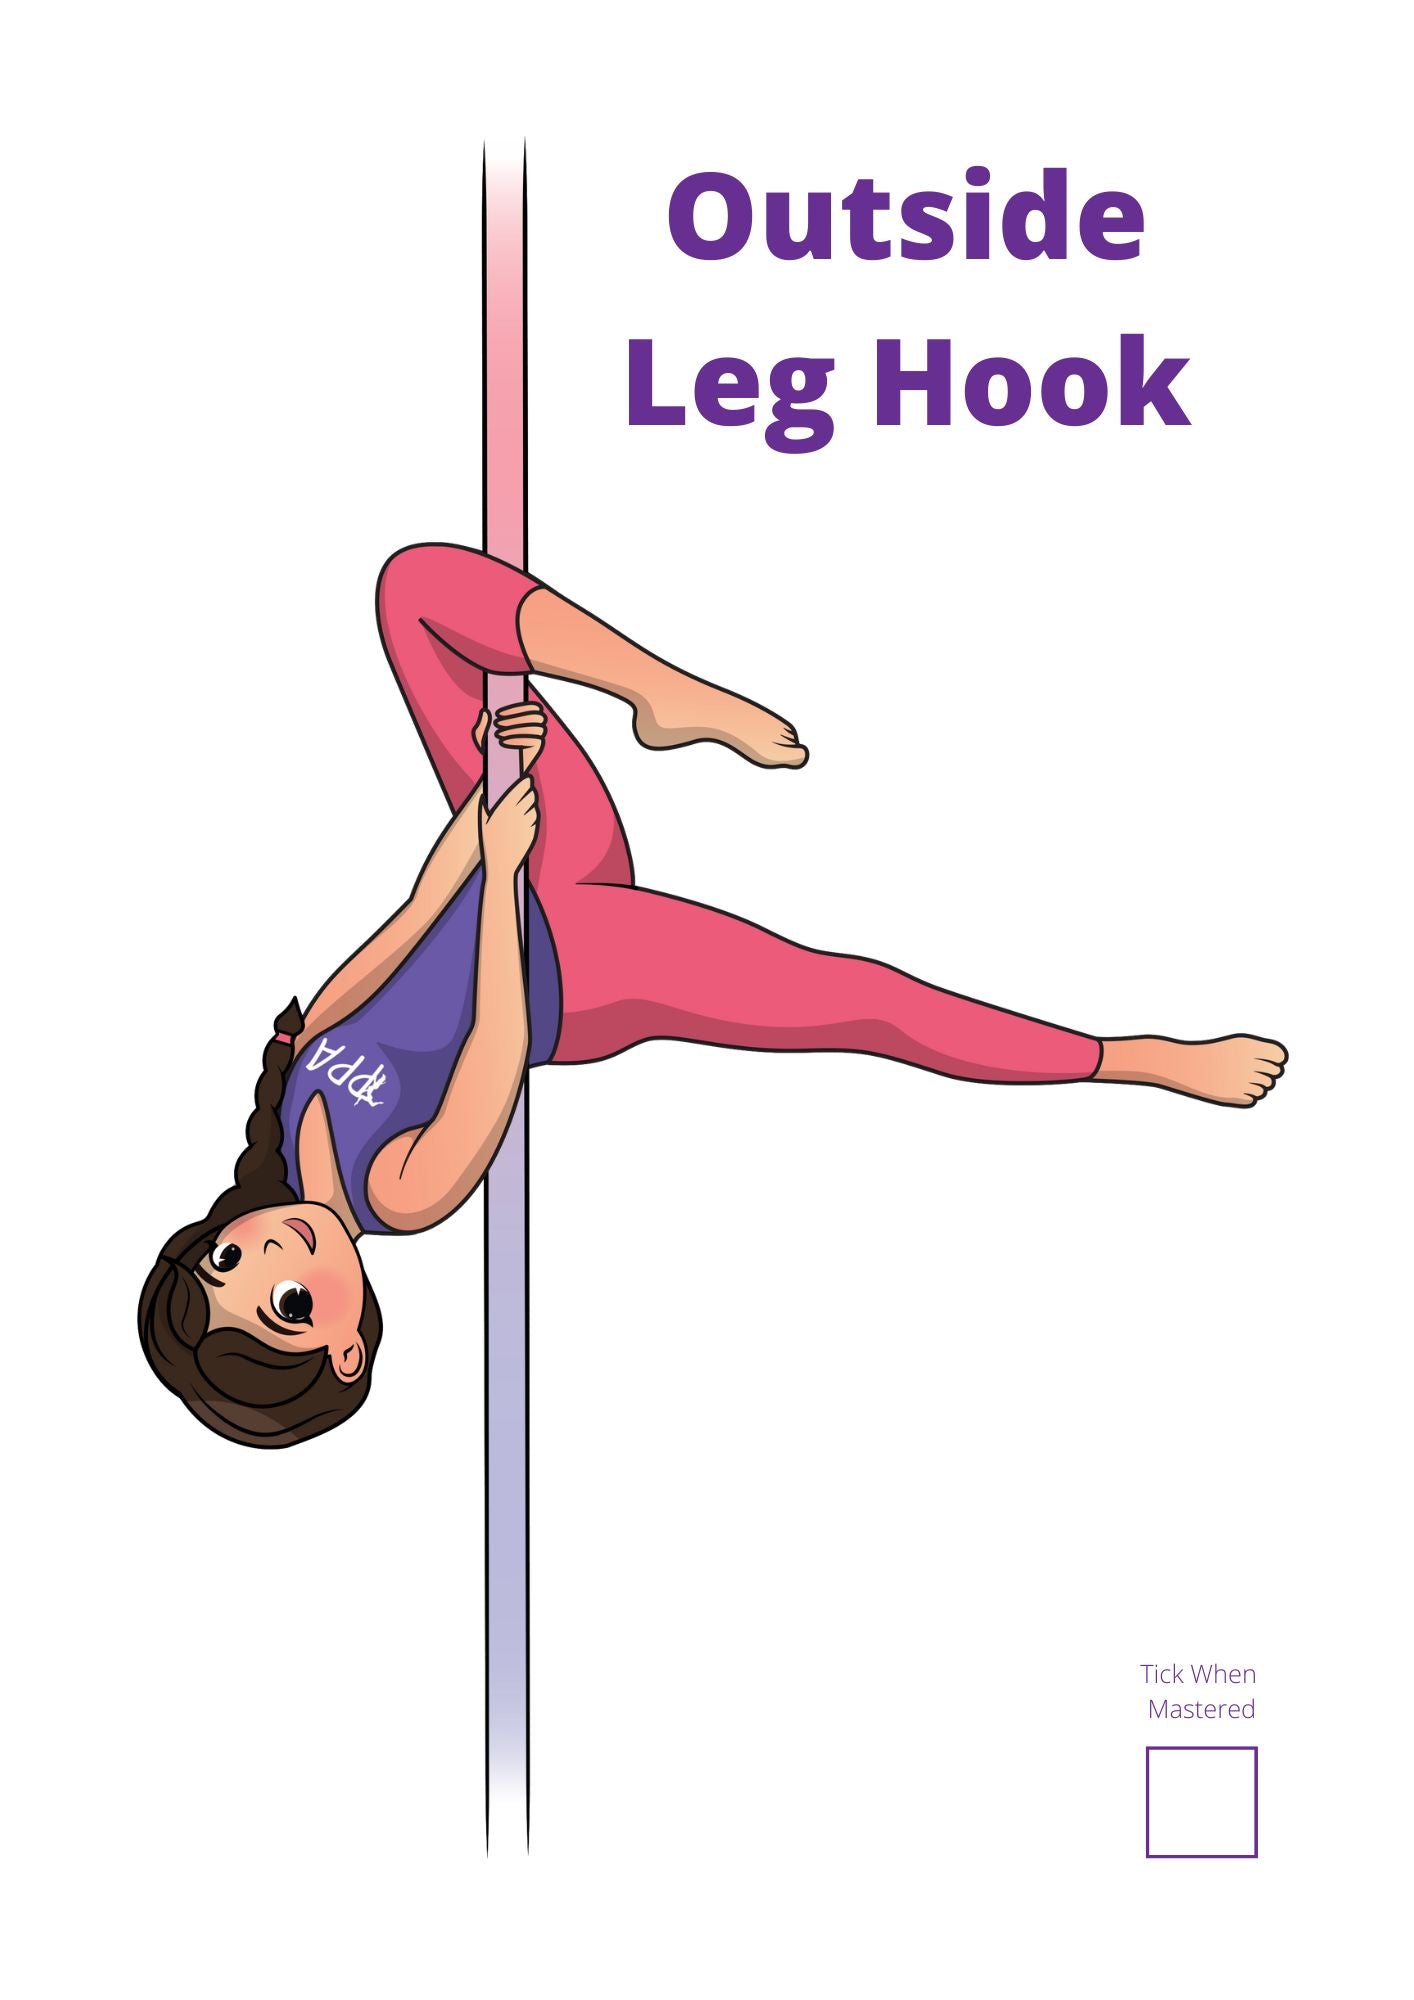 PRE-ORDER - Pole Tricks Book - Intermediate